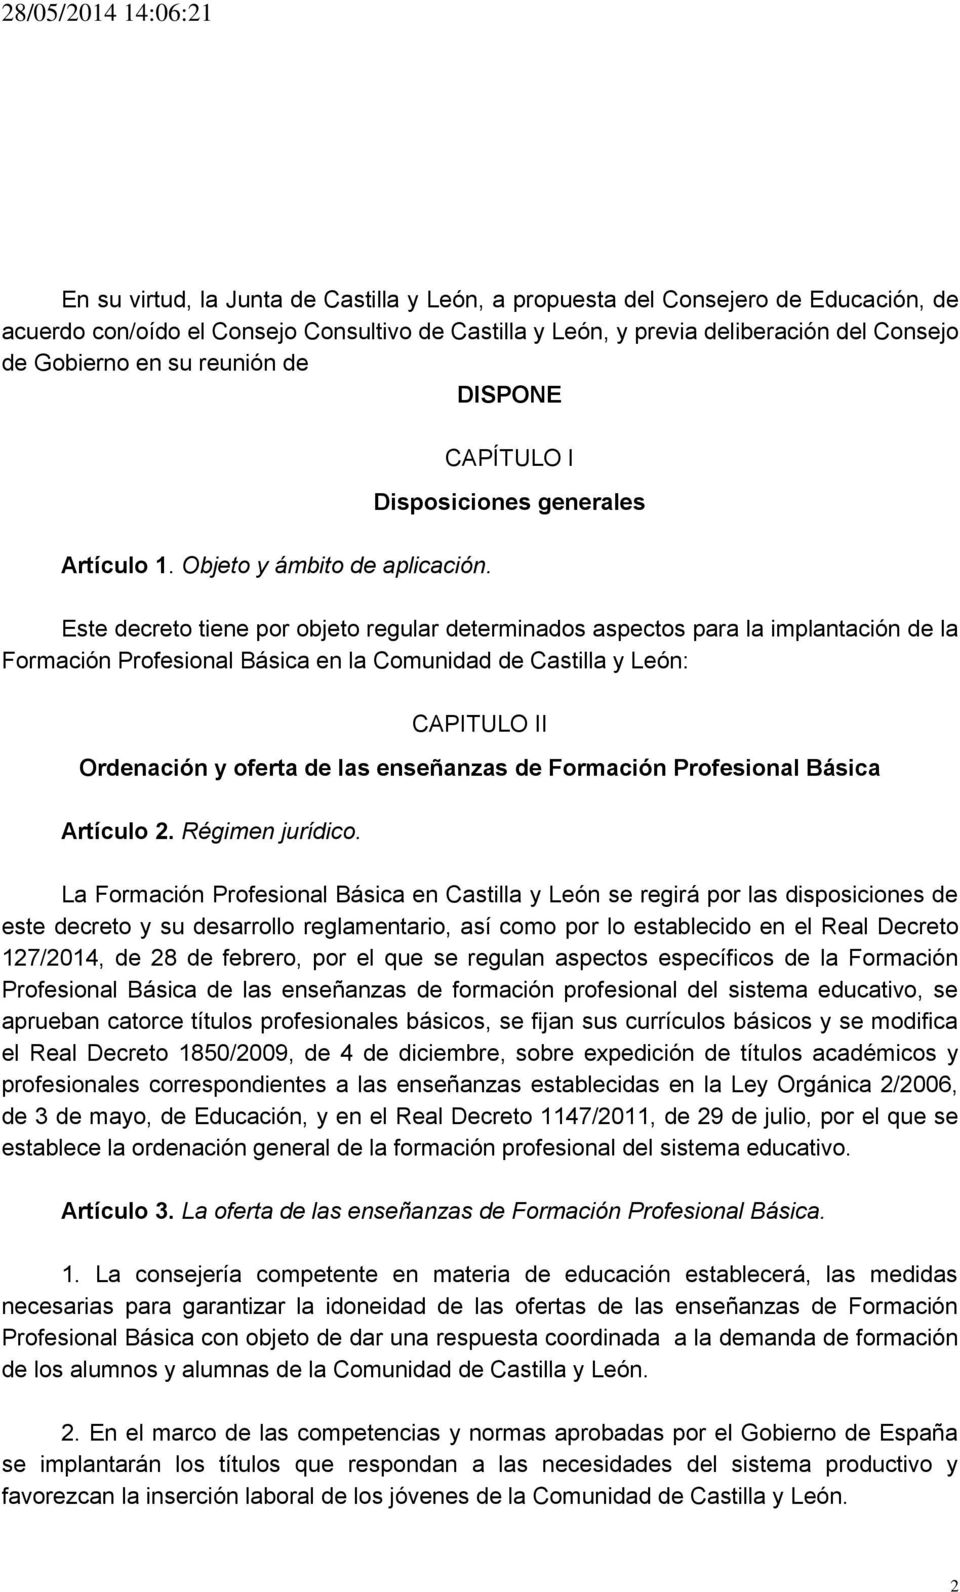 CAPÍTULO I Disposiciones generales Este decreto tiene por objeto regular determinados aspectos para la implantación de la Formación Profesional Básica en la Comunidad de Castilla y León: CAPITULO II